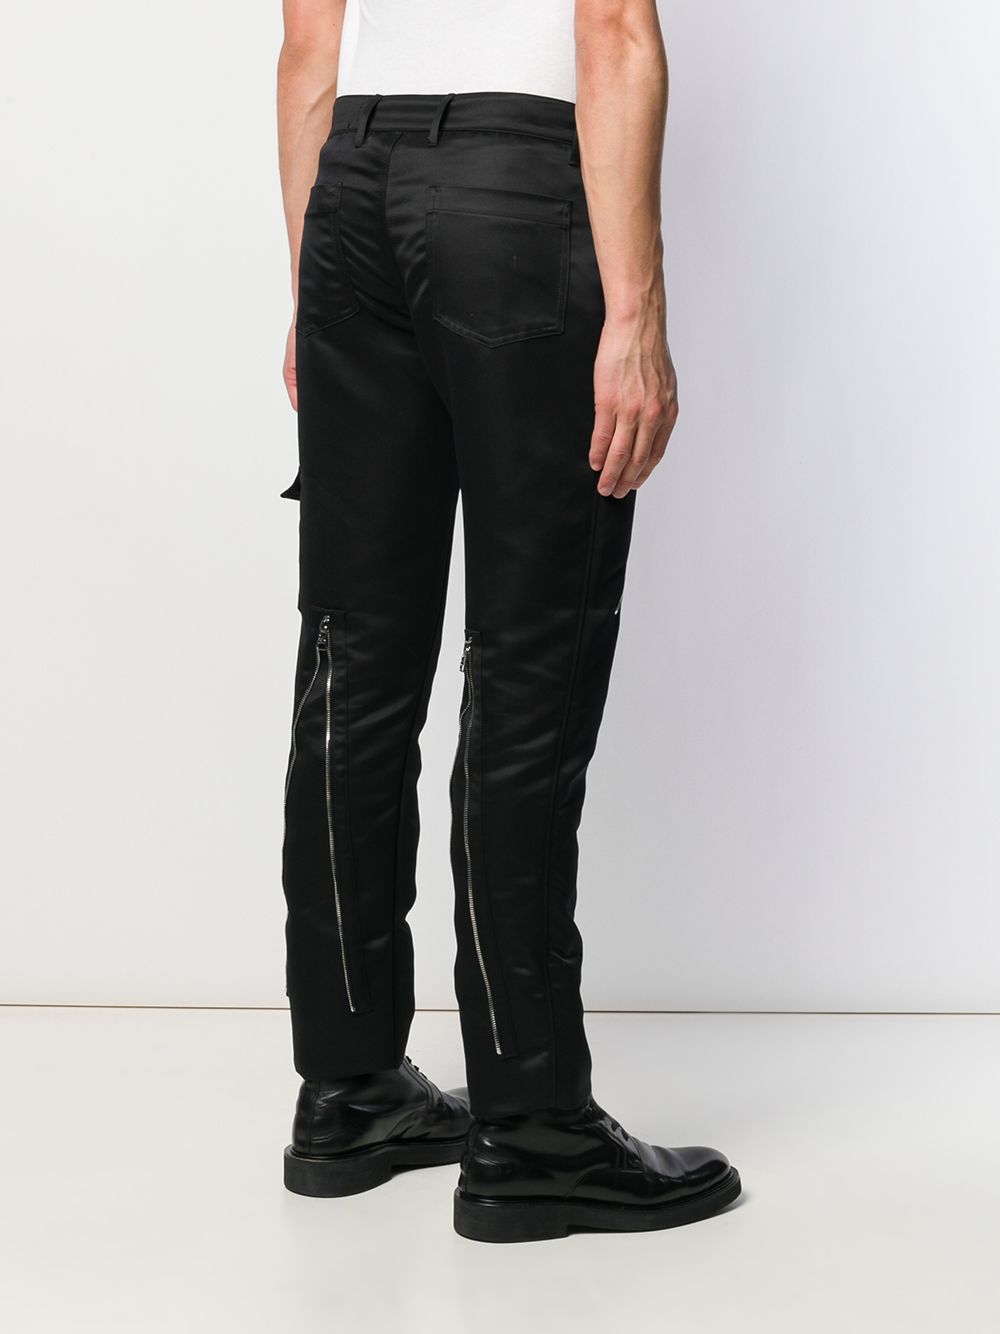 Alexander McQueen Multiple Zips Trousers - Farfetch